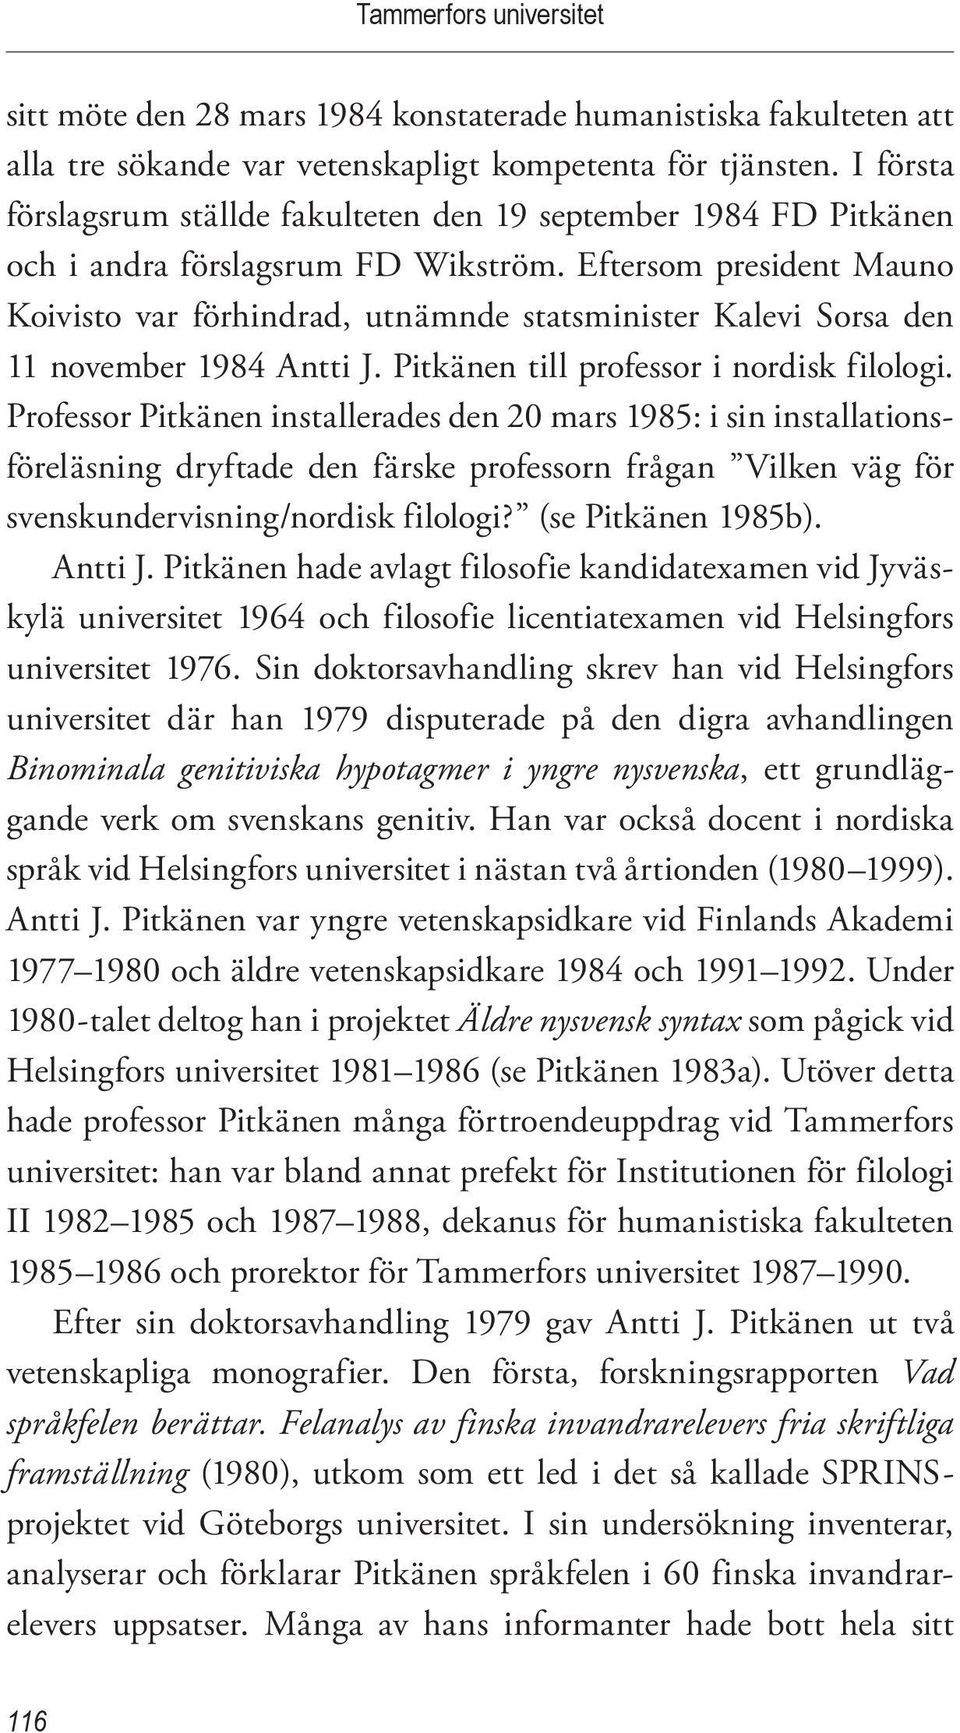 Eftersom president Mauno Koivisto var förhindrad, utnämnde statsminister Kalevi Sorsa den 11 november 1984 Antti J. Pitkänen till professor i nordisk filologi.